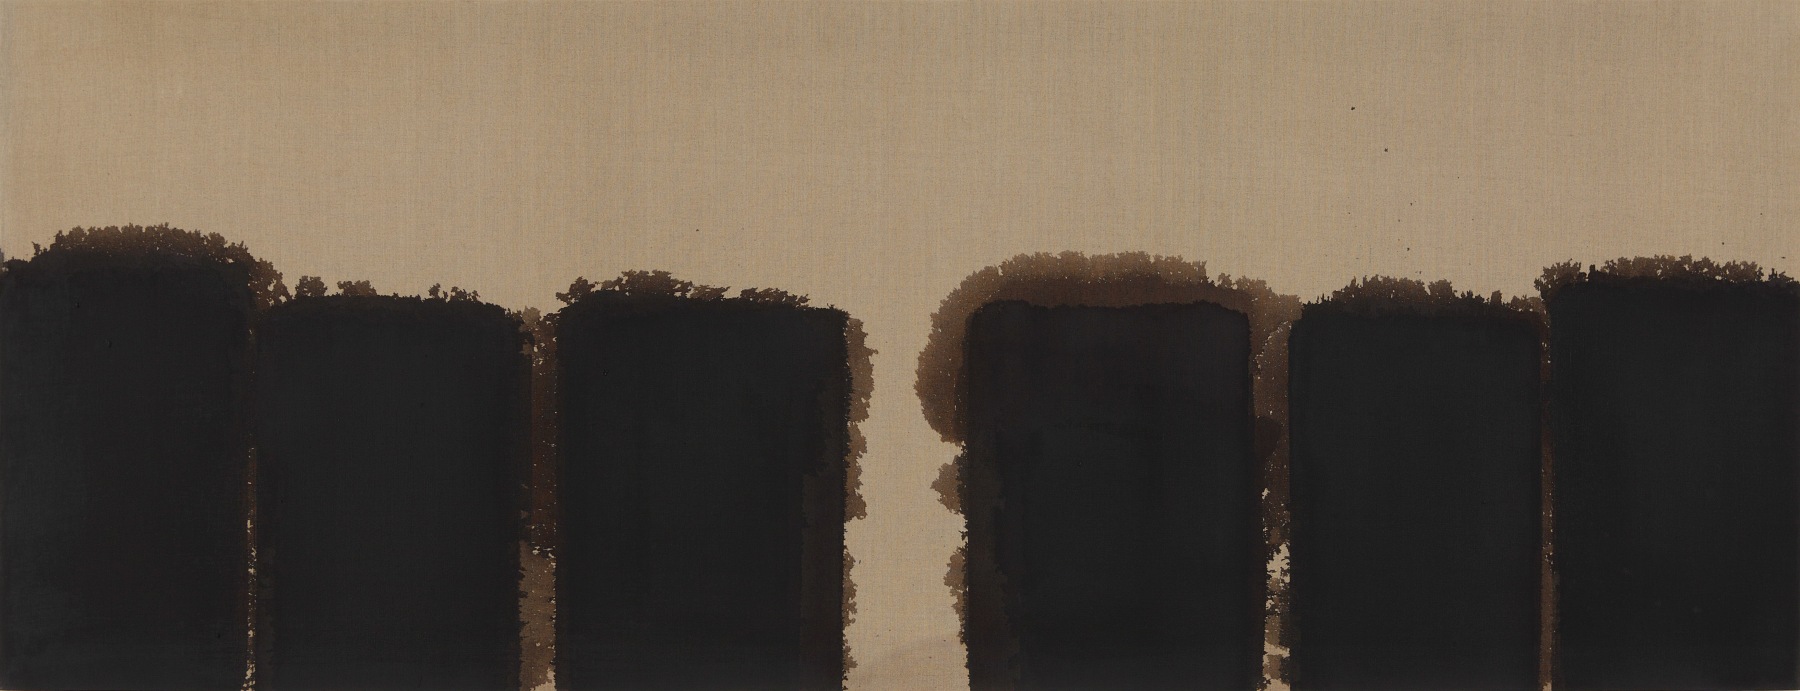 Burnt Umber &amp;amp; Ultramarine&amp;nbsp;&amp;#39;91-#86
1991
Oil on linen
80 x 208 cm